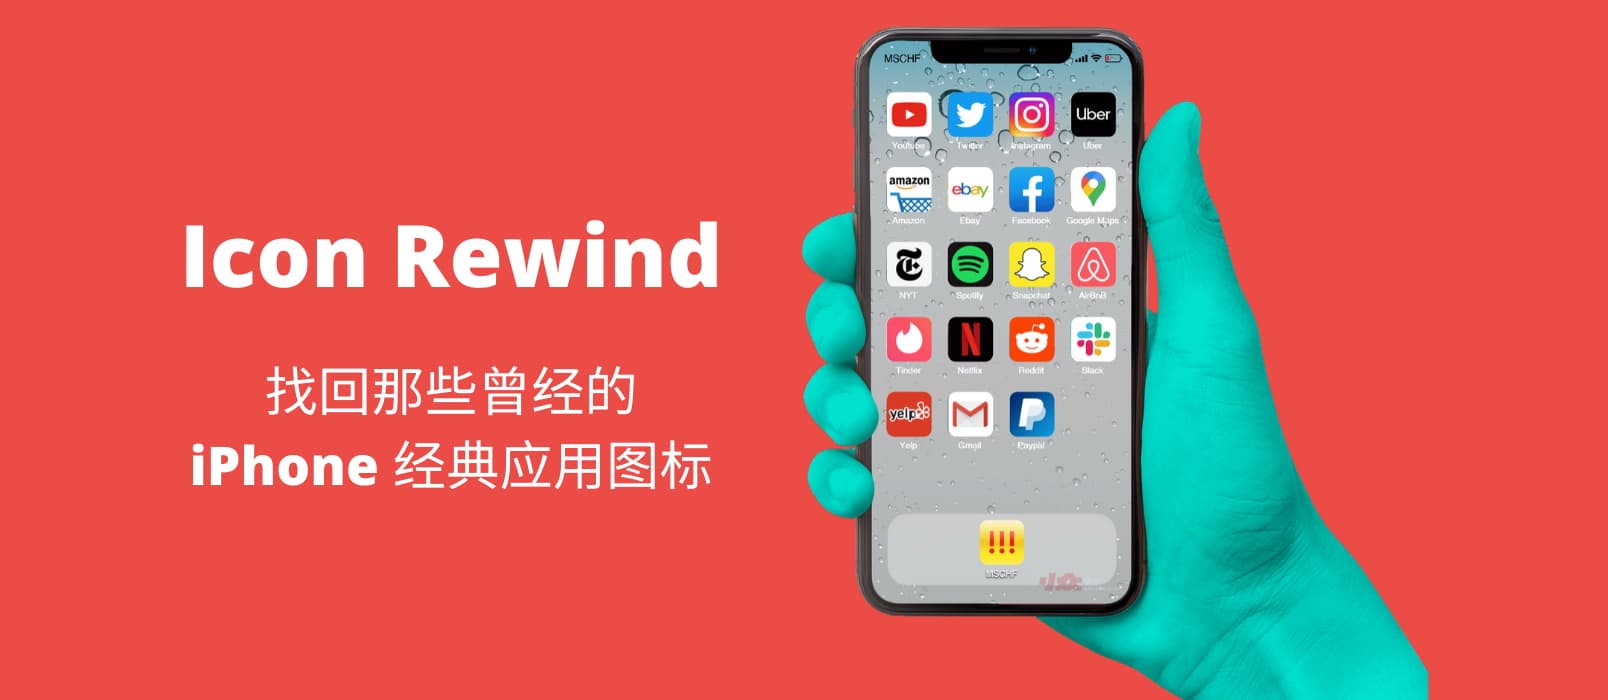 Icon Rewind - 找回曾经经典的 iPhone 应用图标 1